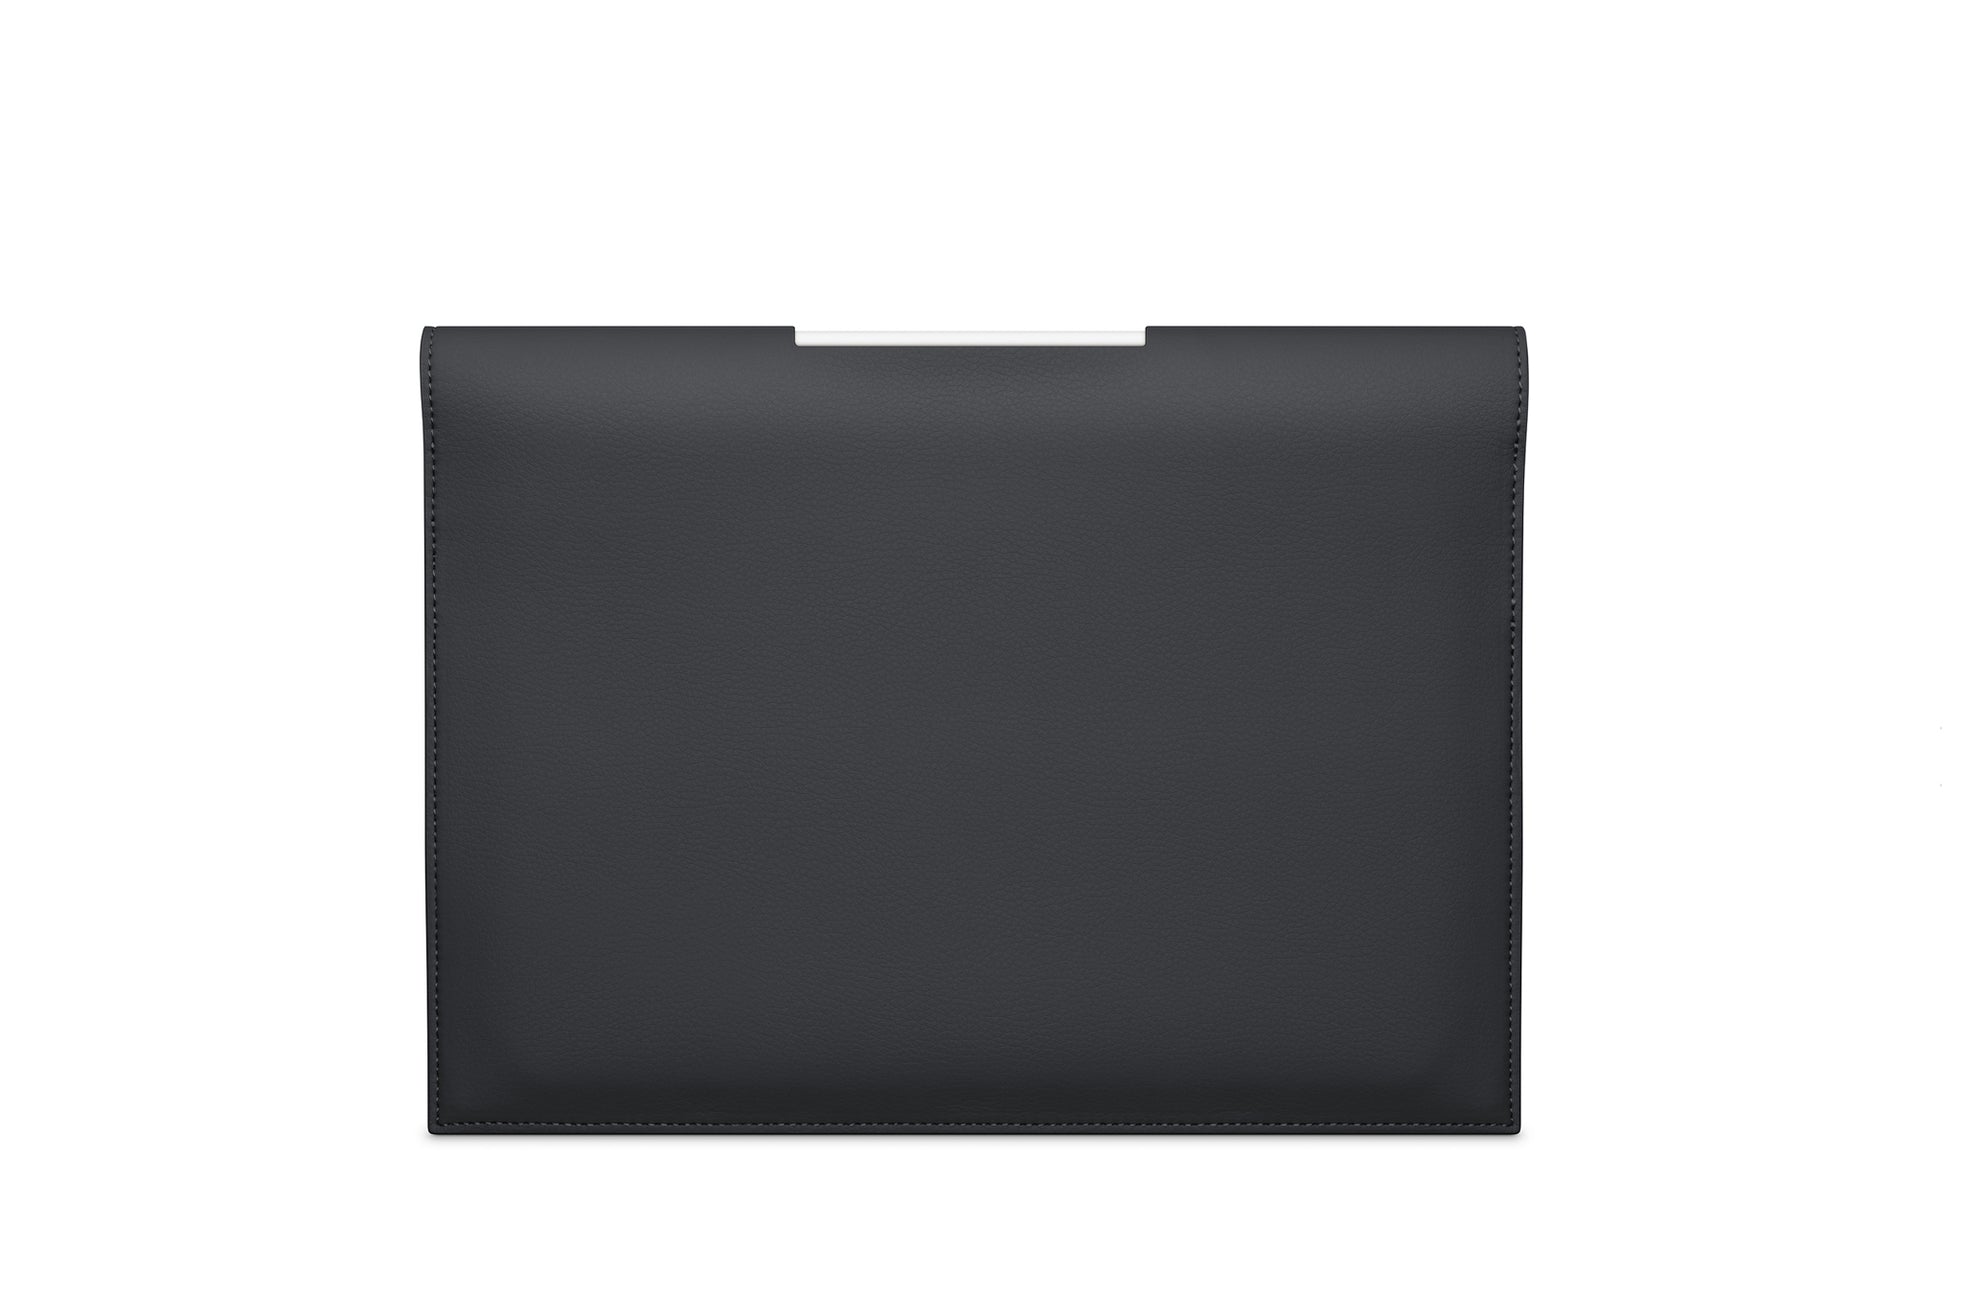 The iPad Portfolio 12.9-inch - Sample Sale in Technik in Black image 2